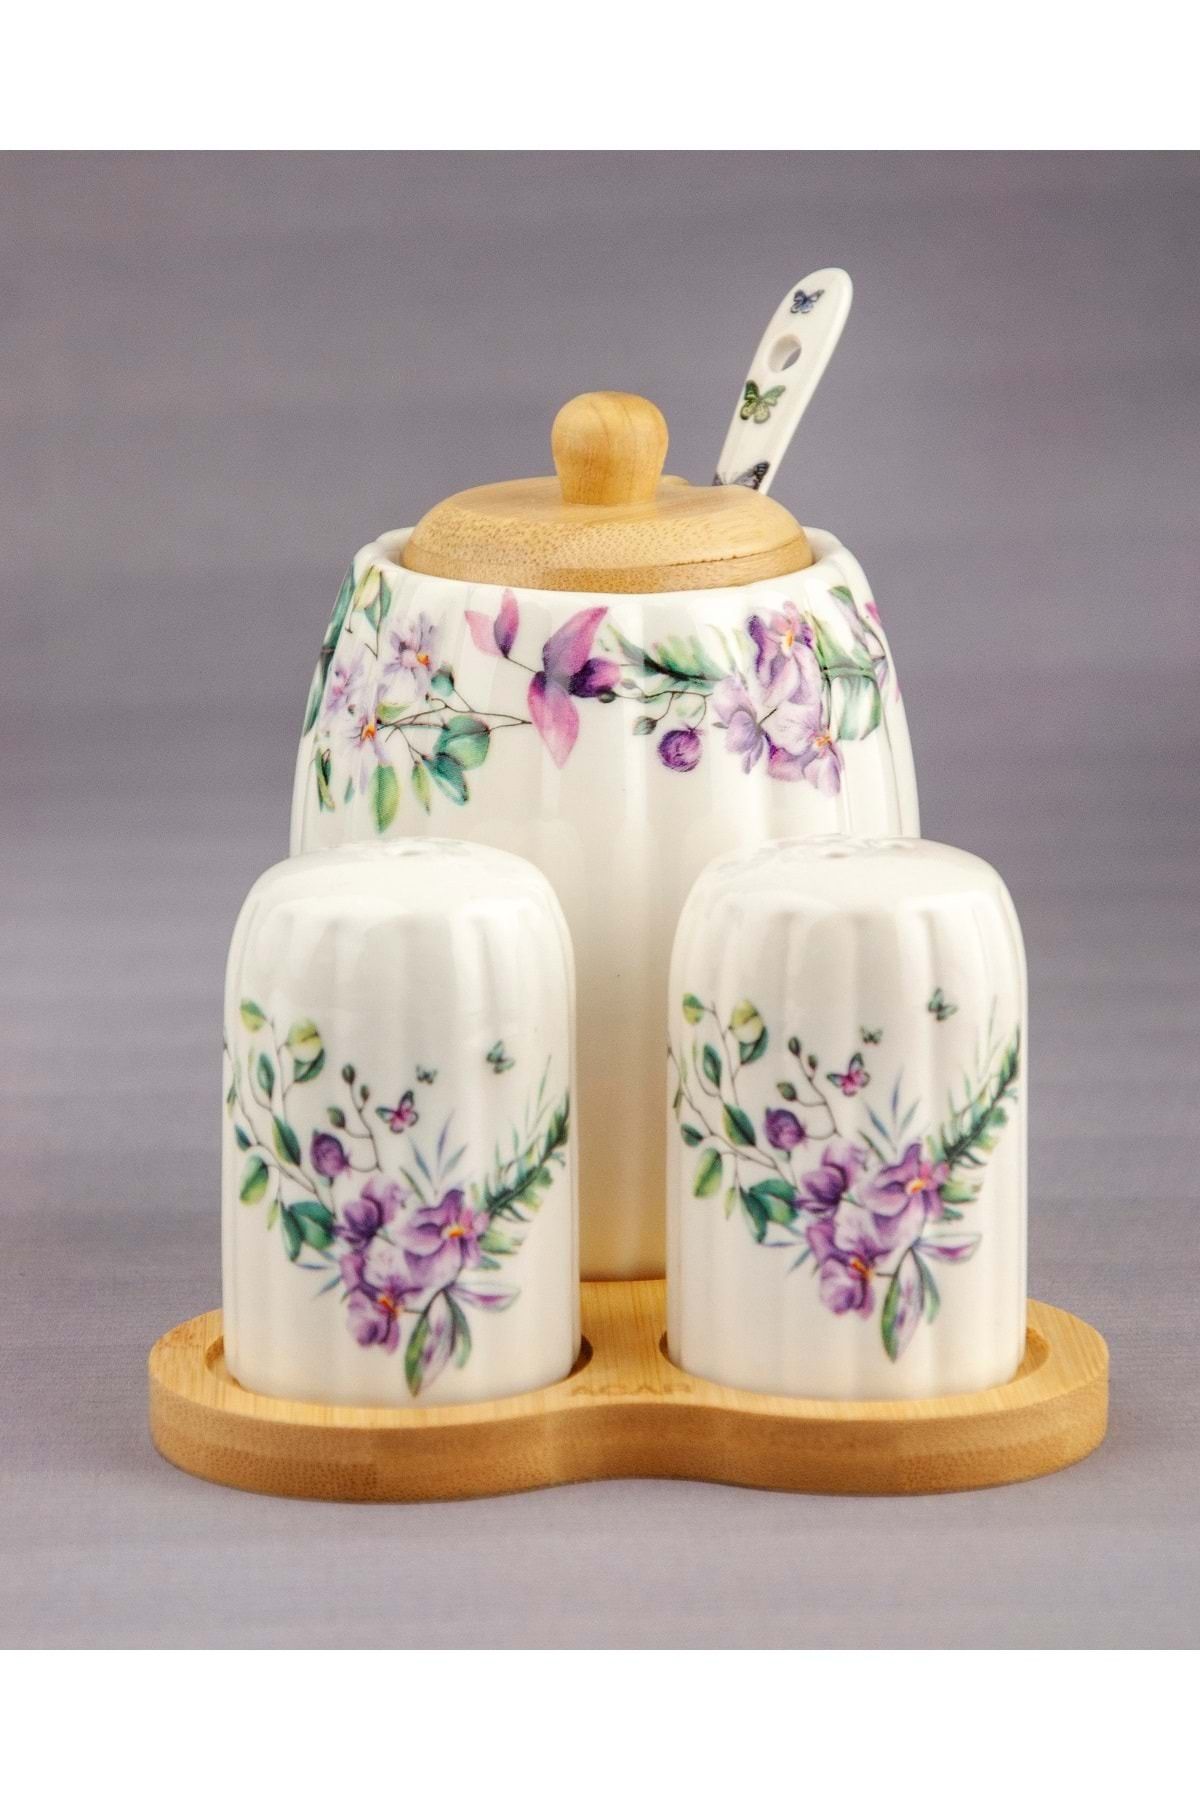 Bursa Porselen Dekor Orkide ahşap standlı porselen tuzluk & karabiberlik & baharatlık